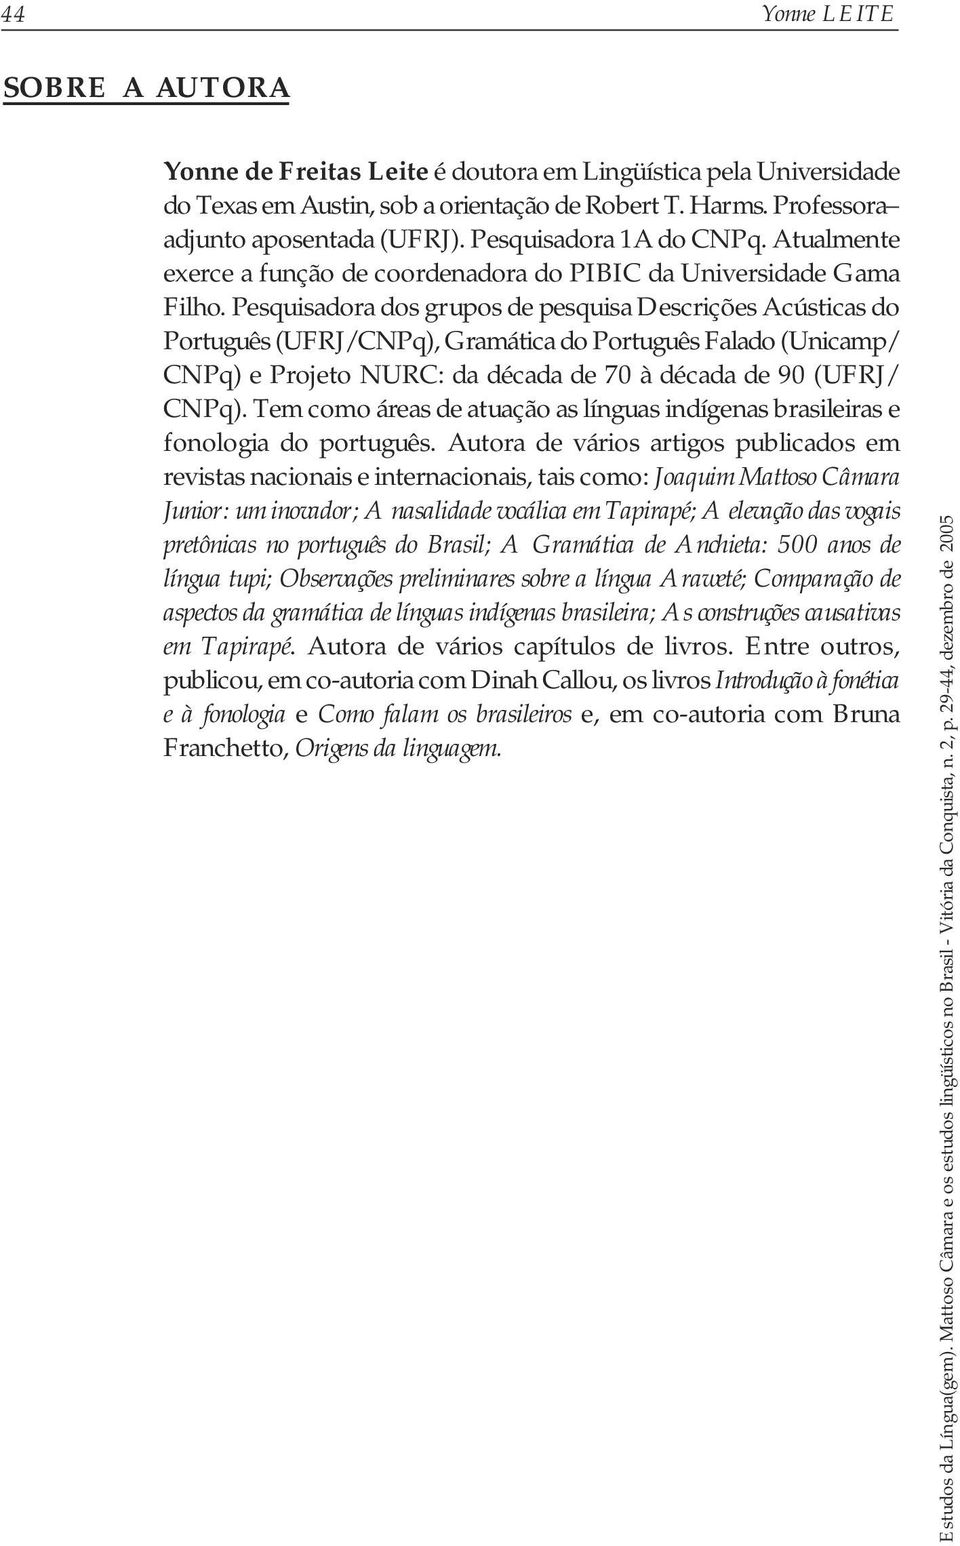 Pesquisadora dos grupos de pesquisa Descrições Acústicas do Português (UFRJ/CNPq), Gramática do Português Falado (Unicamp/ CNPq) e Projeto NURC: da década de 70 à década de 90 (UFRJ/ CNPq).